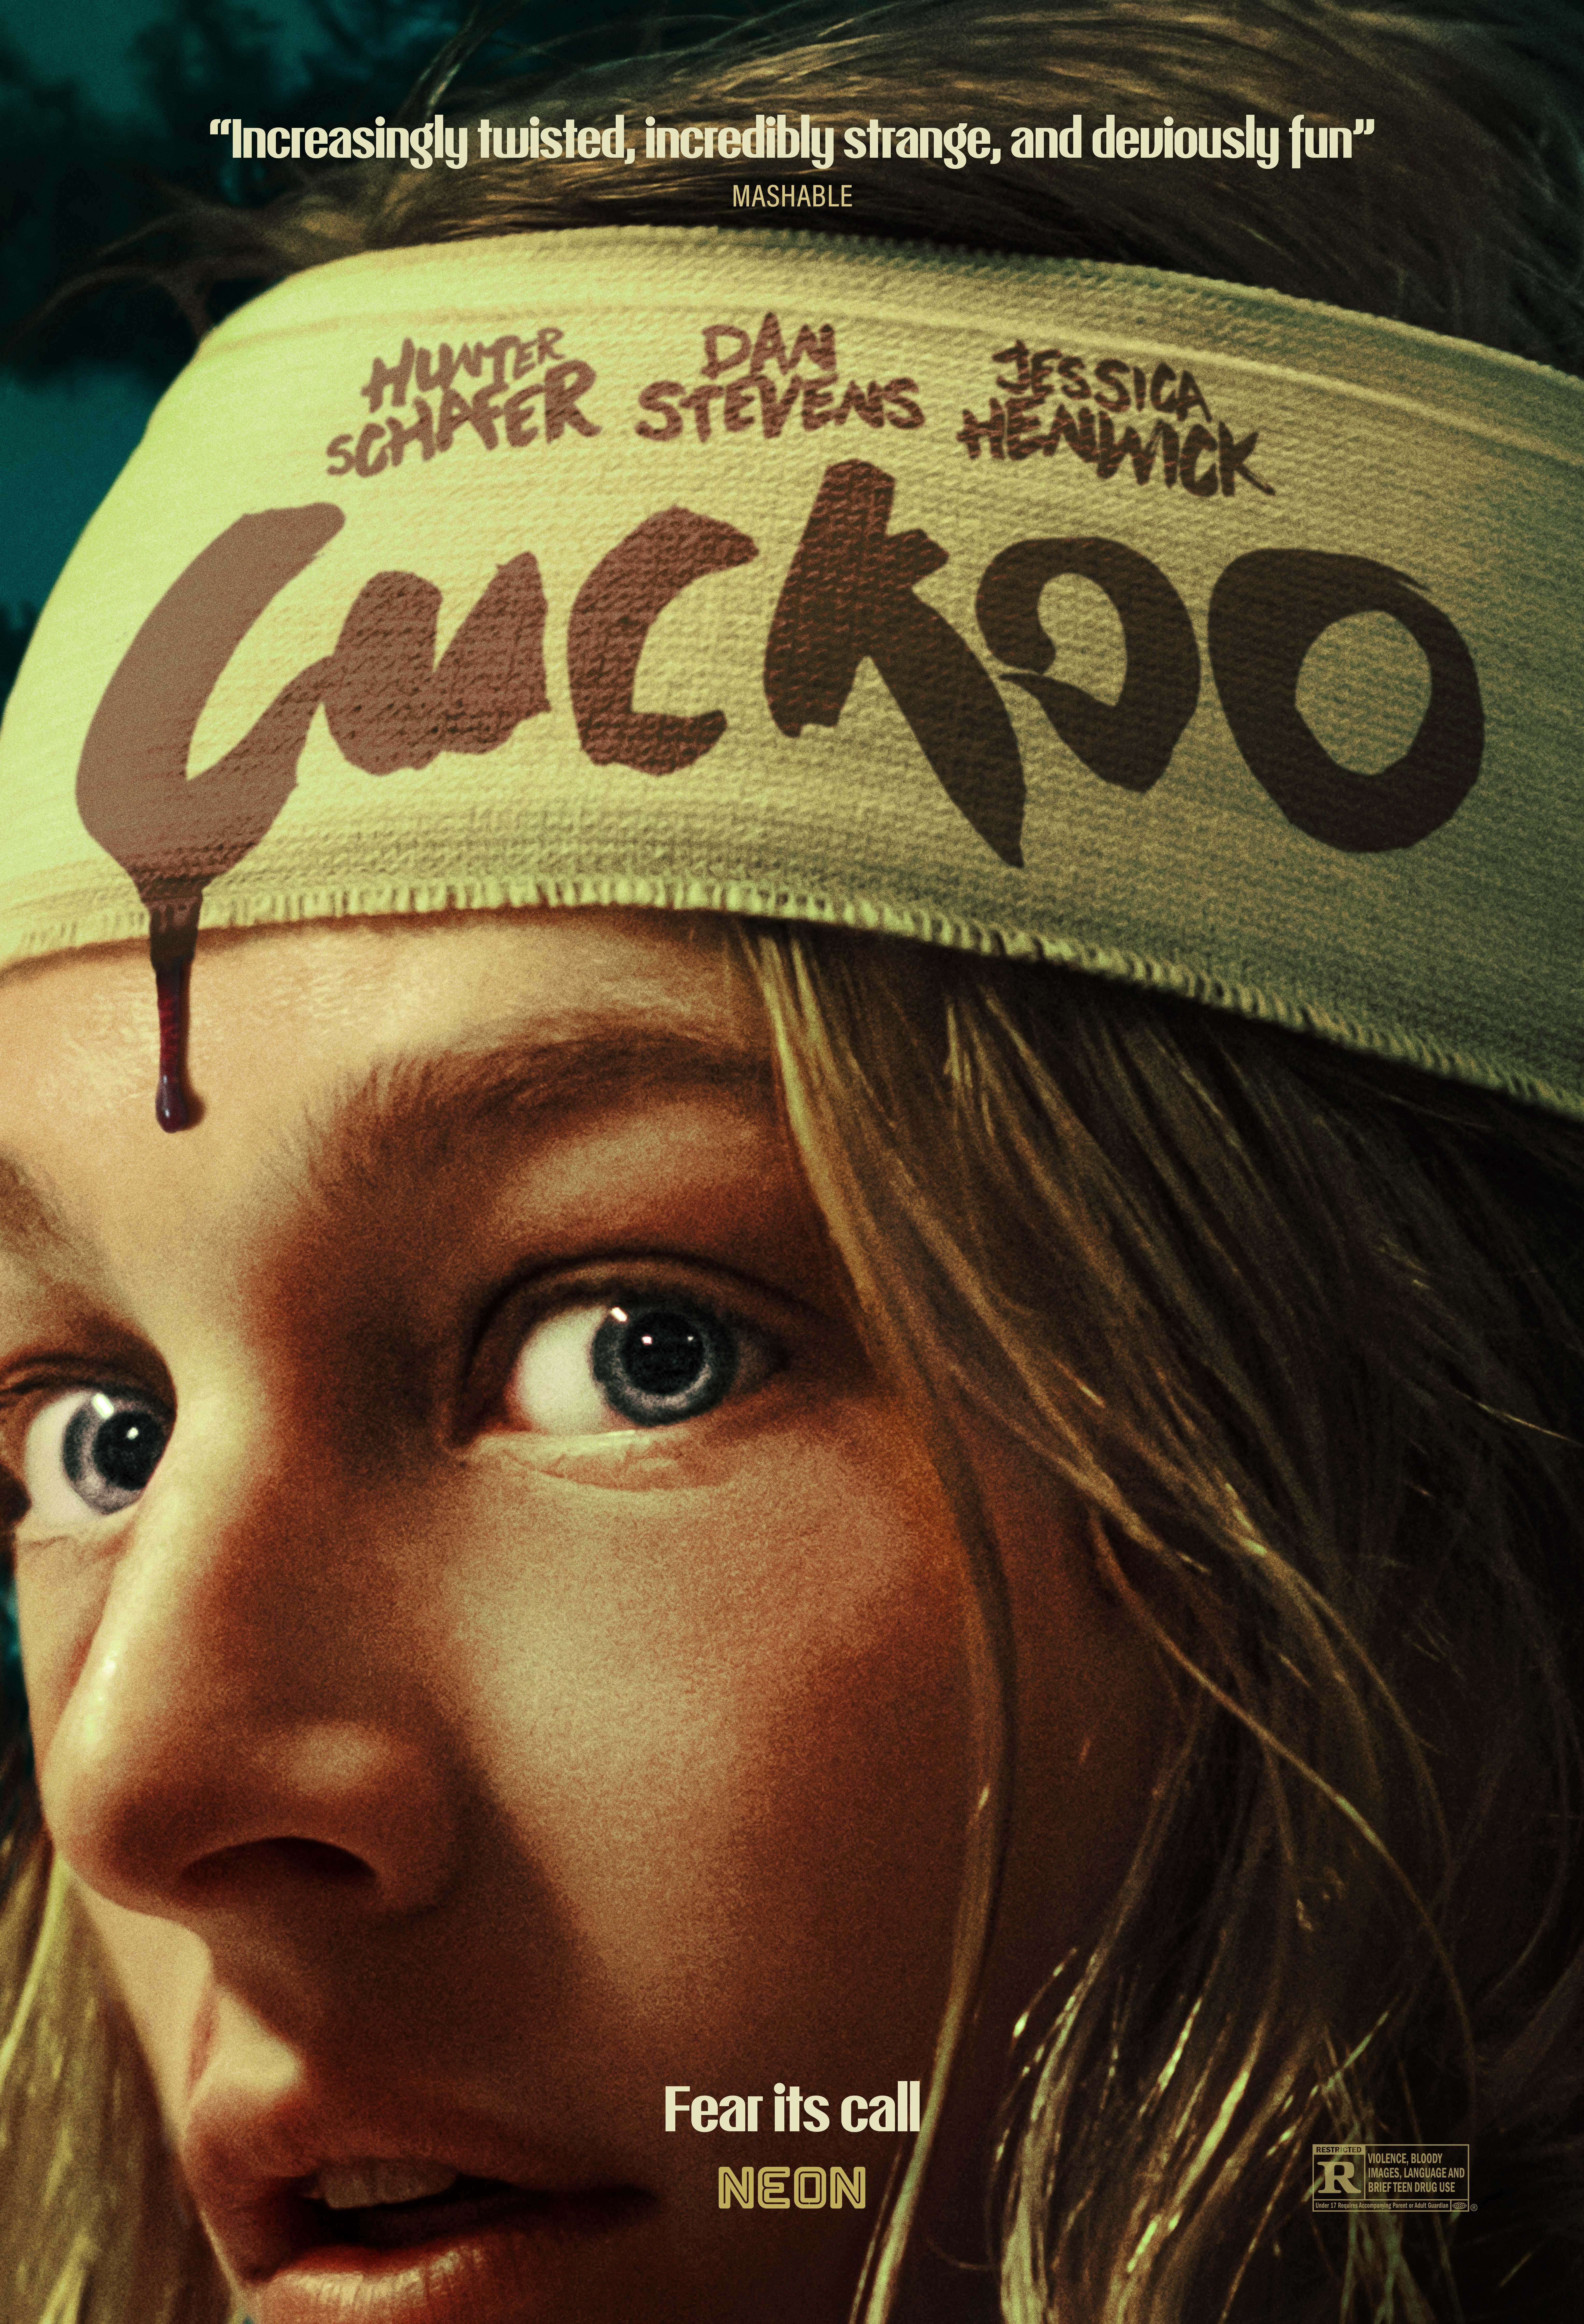 Yeni Korku Filmi Cuckoo'da Dan Stevens Uğursuz AF Gibi Görünüyor başlıklı makale için resim